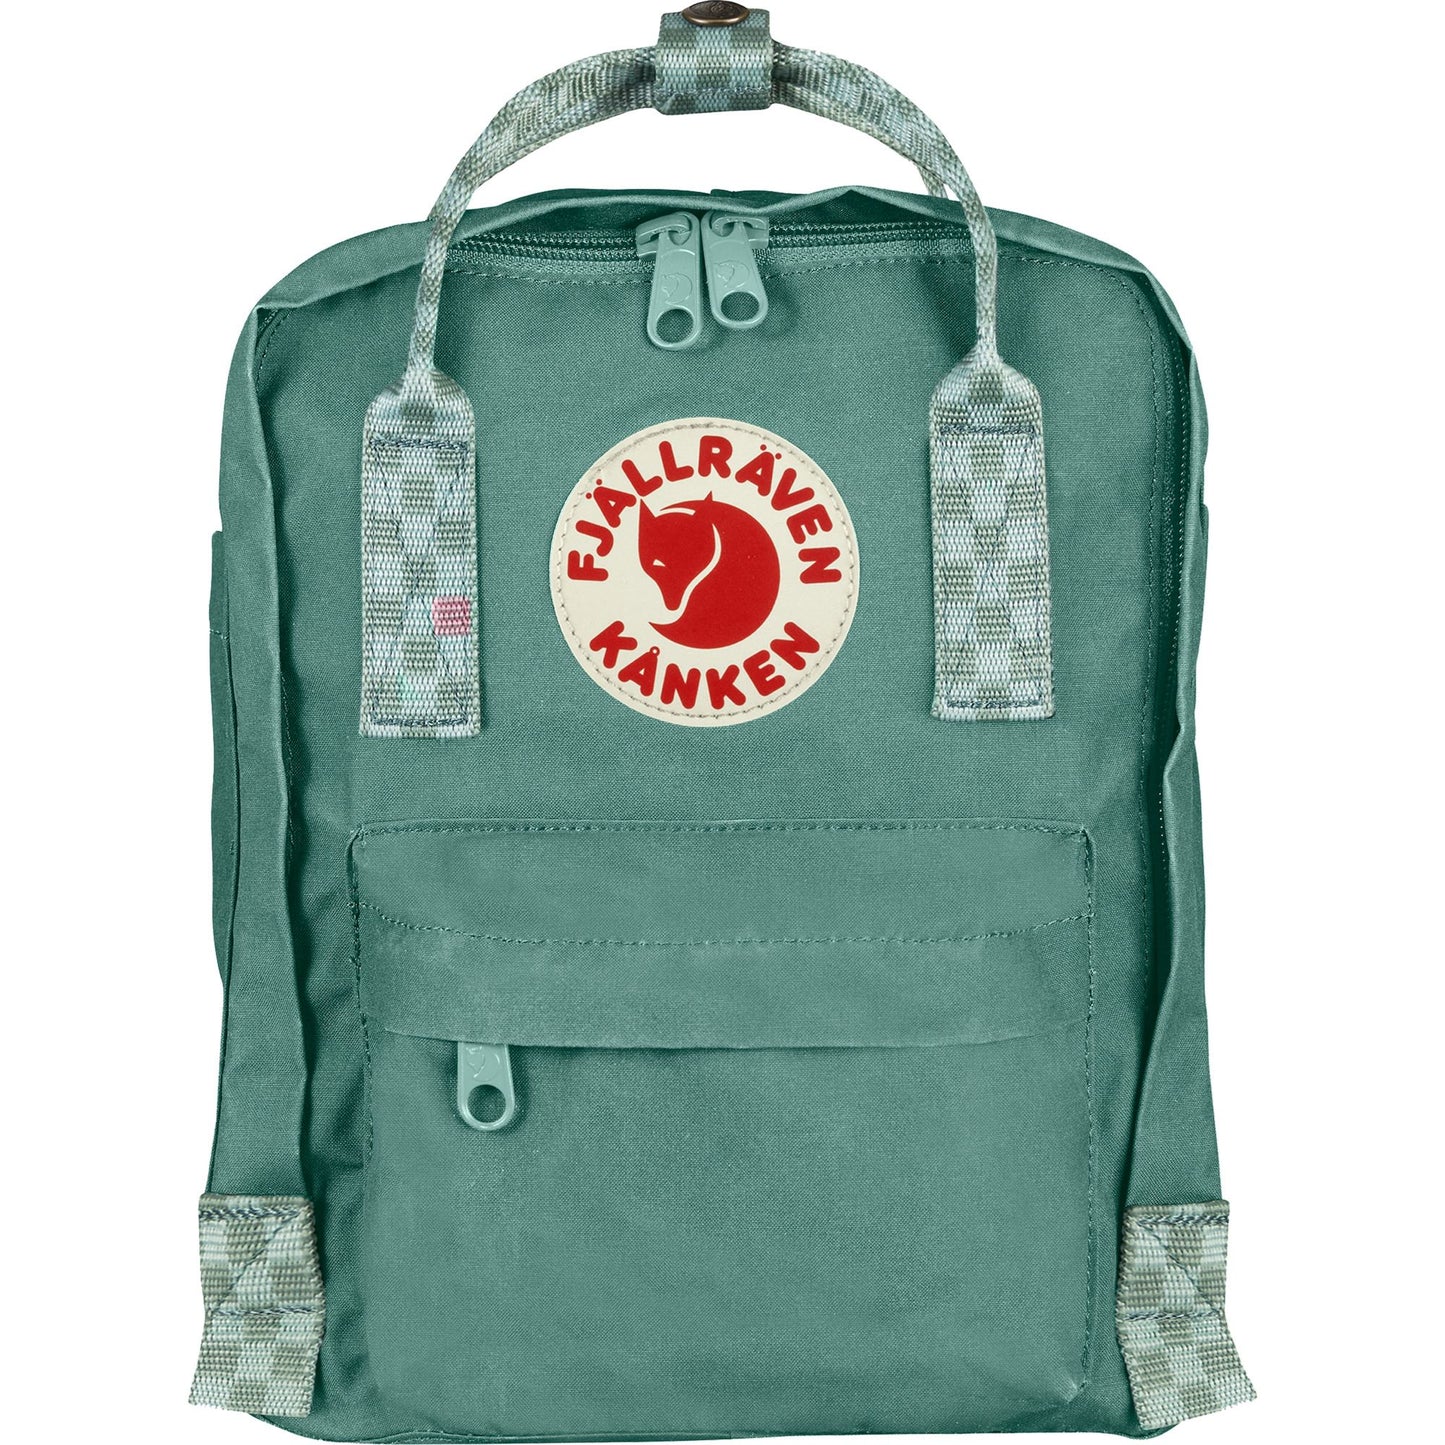 Mini sage green backpack